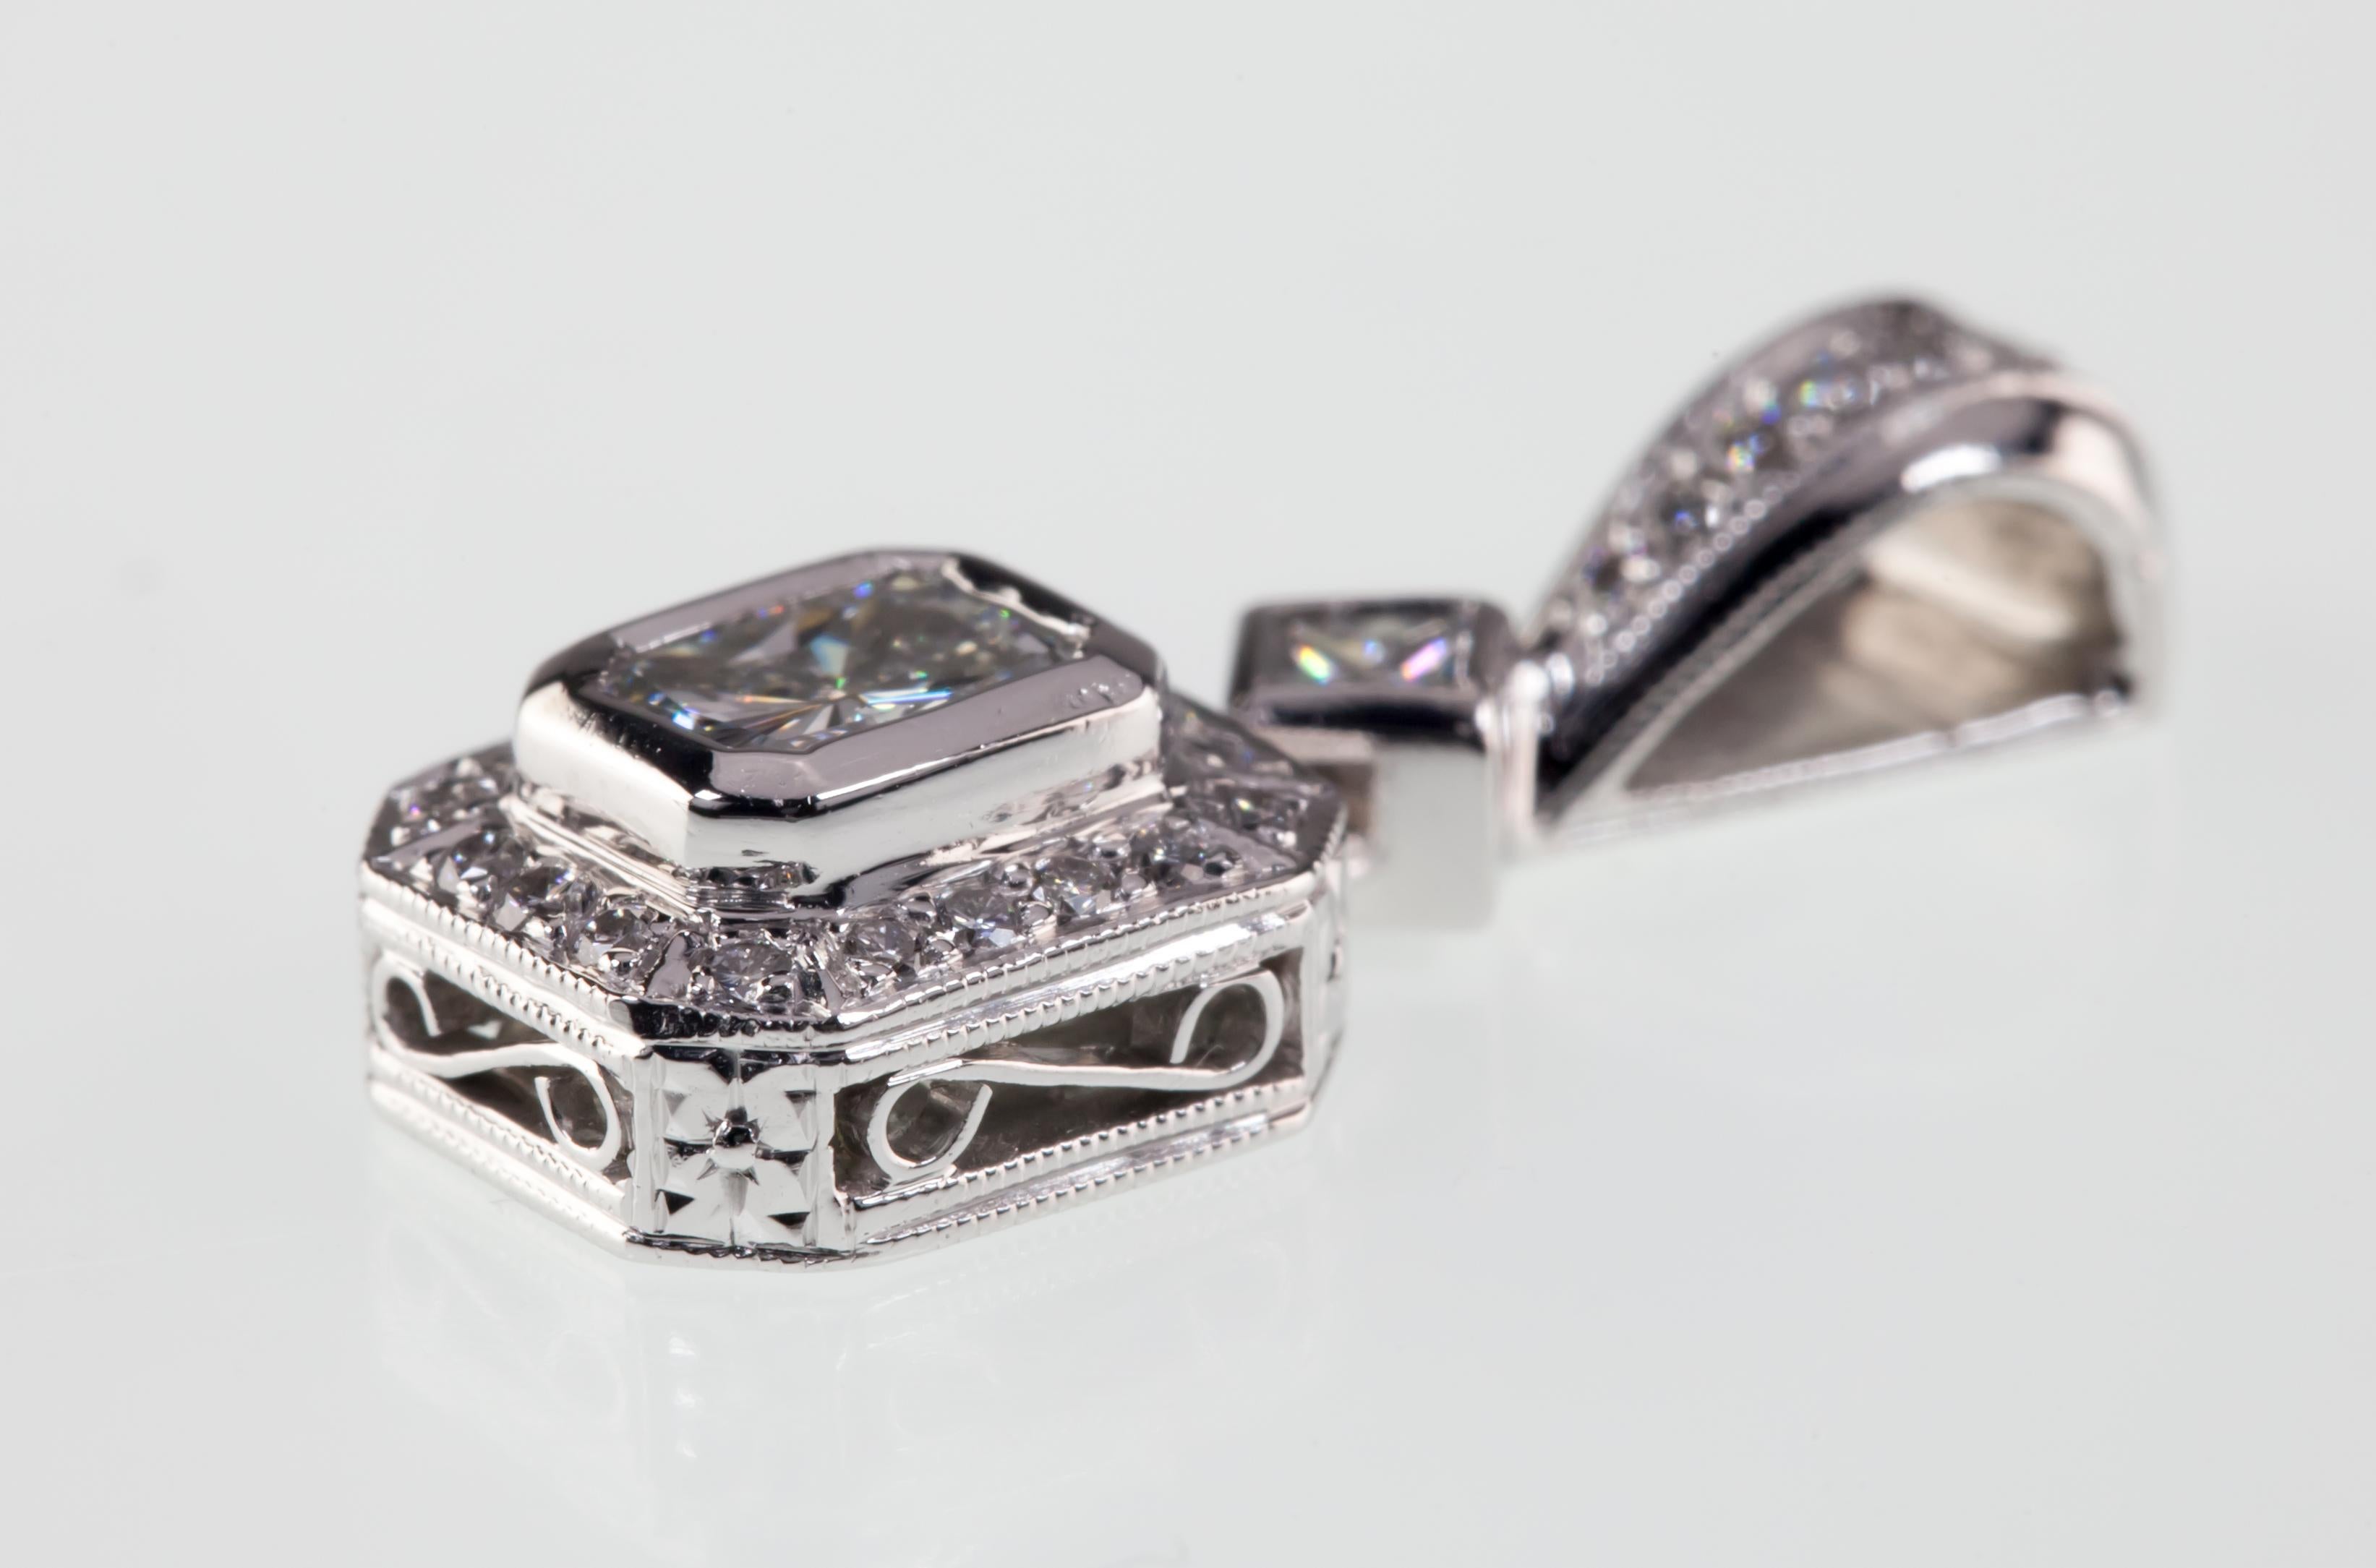 Wunderschöner Diamant-Anhänger von Michael Beaudry
Features Appx 0,35 Ct Radiant Cut Solitär Diamant mit 0,20 Ct Akzent Stones
Durchschnittliche Farbe = G
Durchschnittliche Reinheit = VS2
Zarte Galeriearbeit und Milgrain-Details an den Seiten und